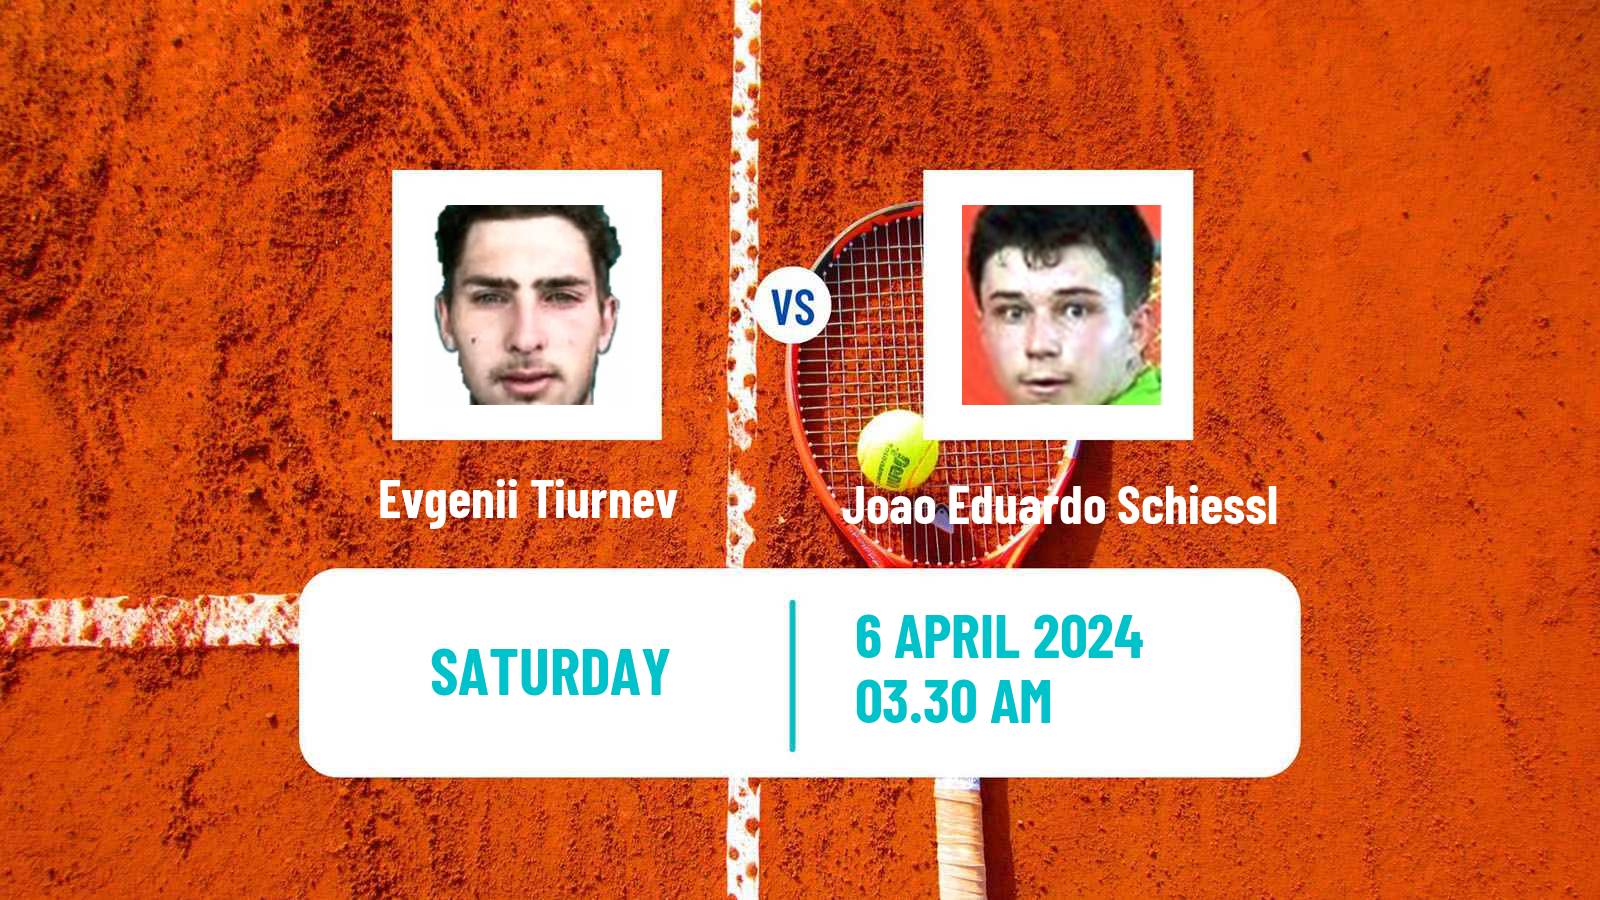 Tennis ITF M15 Antalya 9 Men Evgenii Tiurnev - Joao Eduardo Schiessl